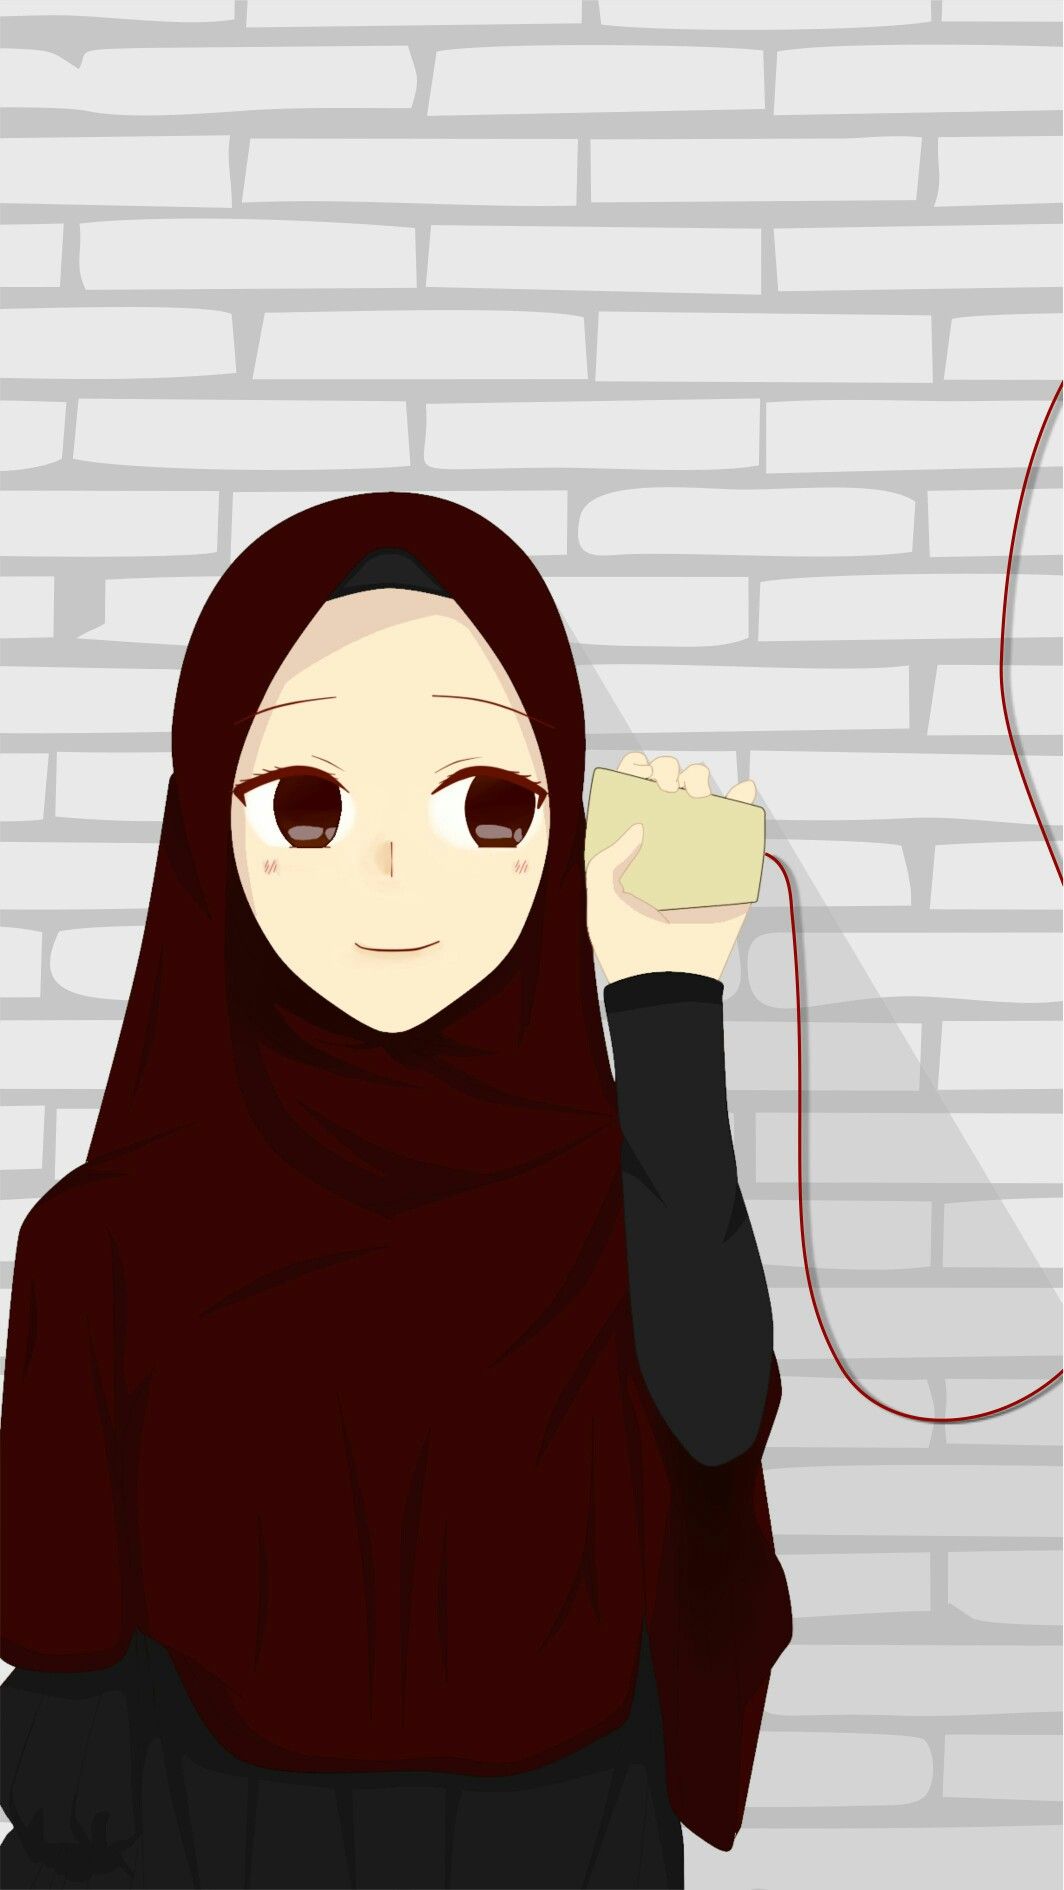 이슬람 커플 벽지,만화,삽화,소설 속의 인물,애니메이션,생기